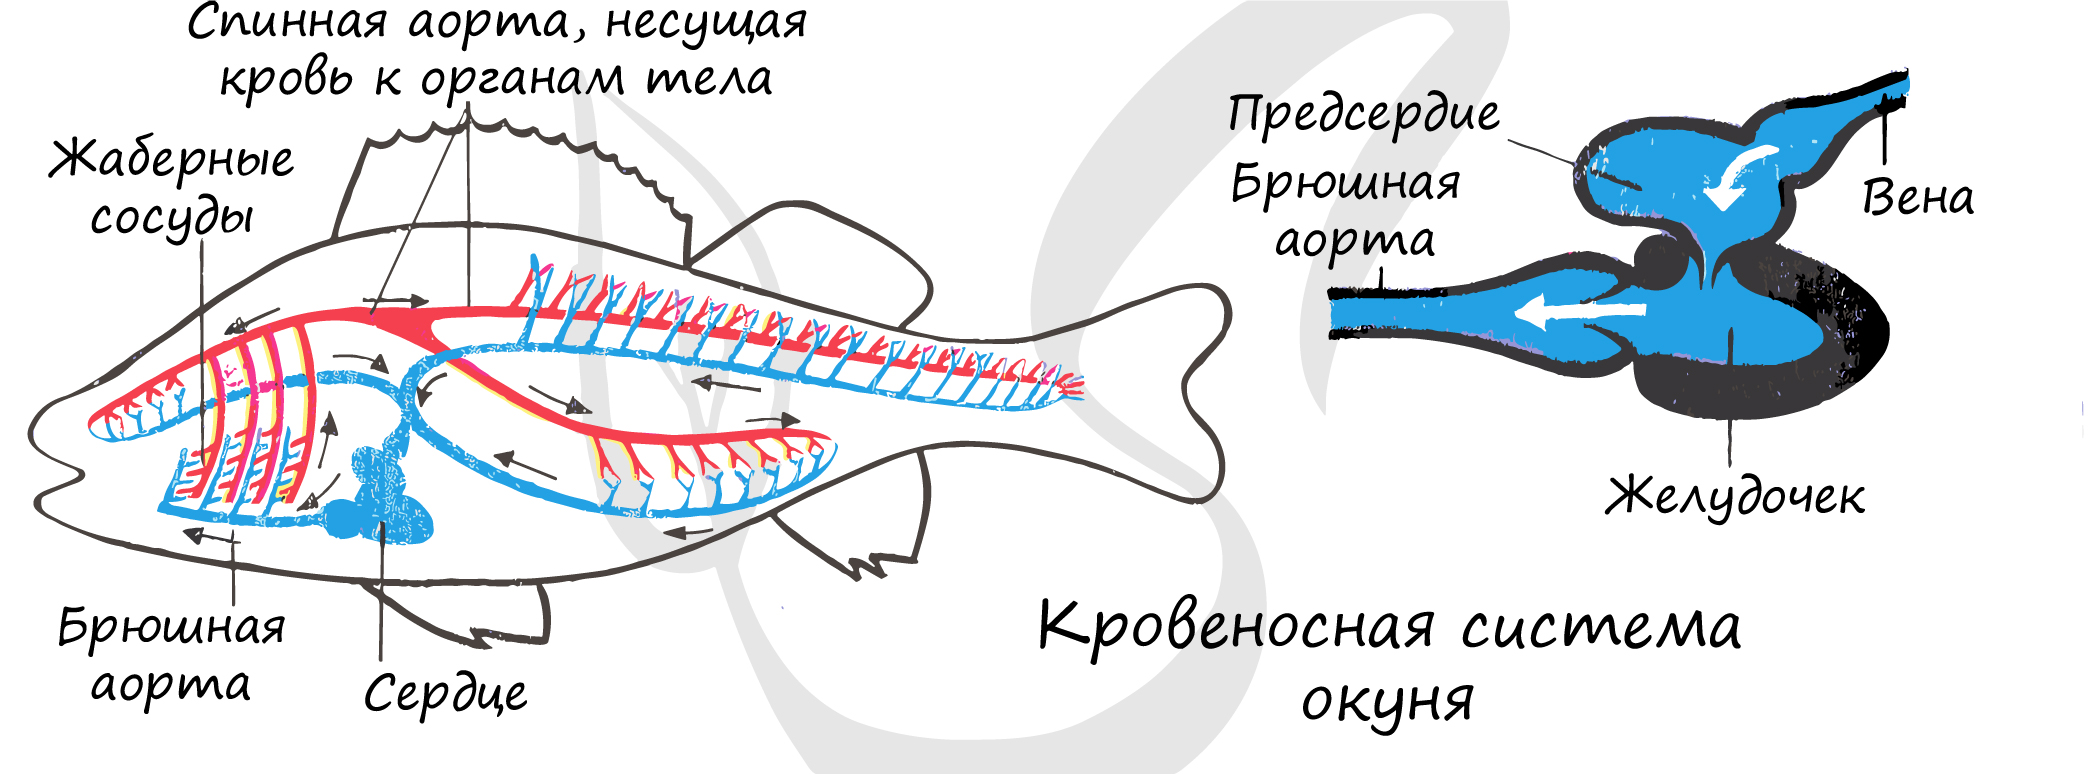 Окунь круги кровообращения. Схема строения кровеносной системы костной рыбы. Кровеносная система рыб схема 7 класс. Внутреннее строение речного окуня кровеносная система. Кровеносная система у рыб представлена кровообращения.